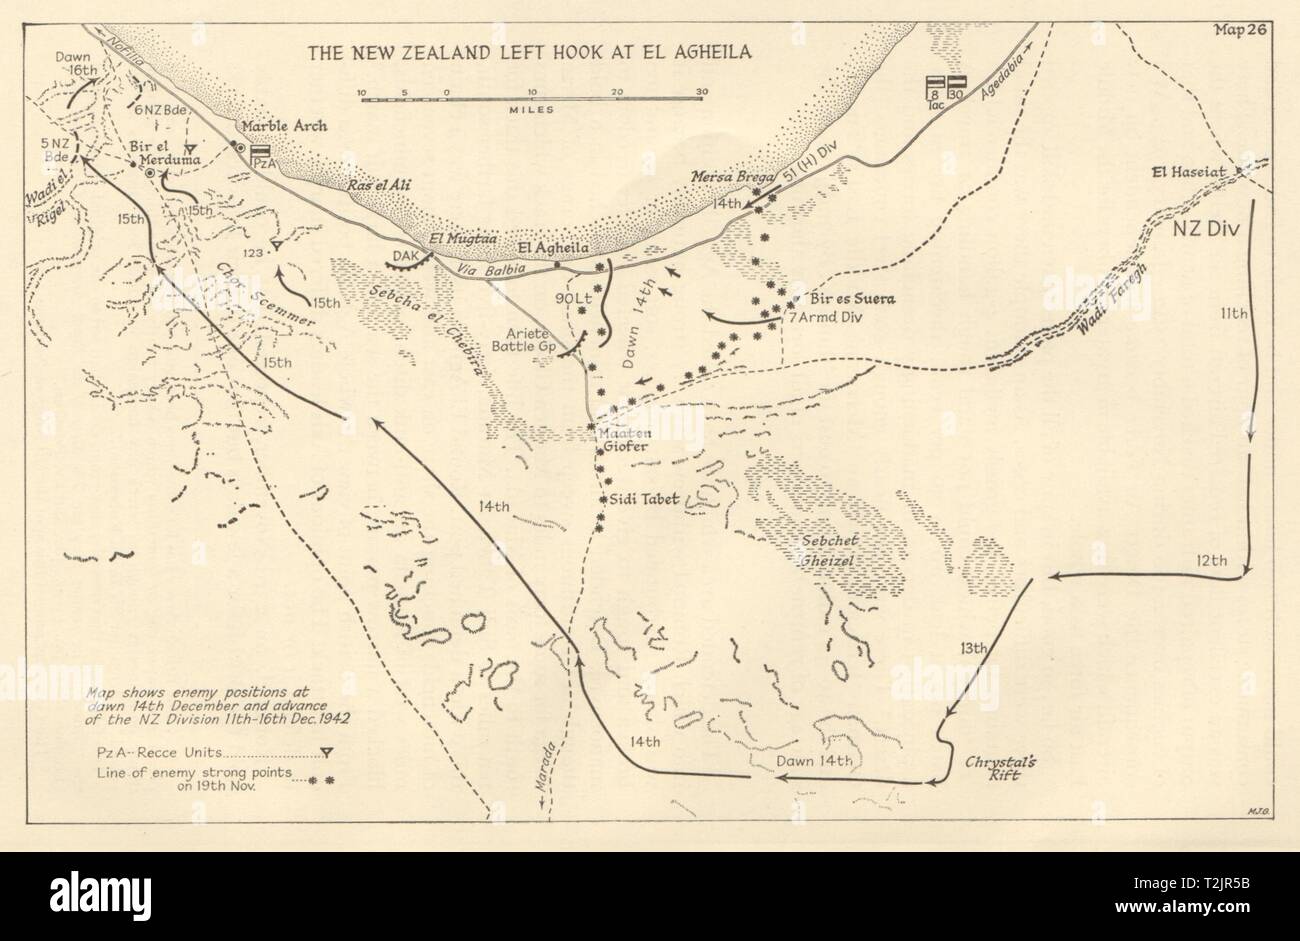 Schlacht von El Agheila. Neuseeland linken Haken 11-16 Dezember 1942. Libyen 1966 Karte Stockfoto